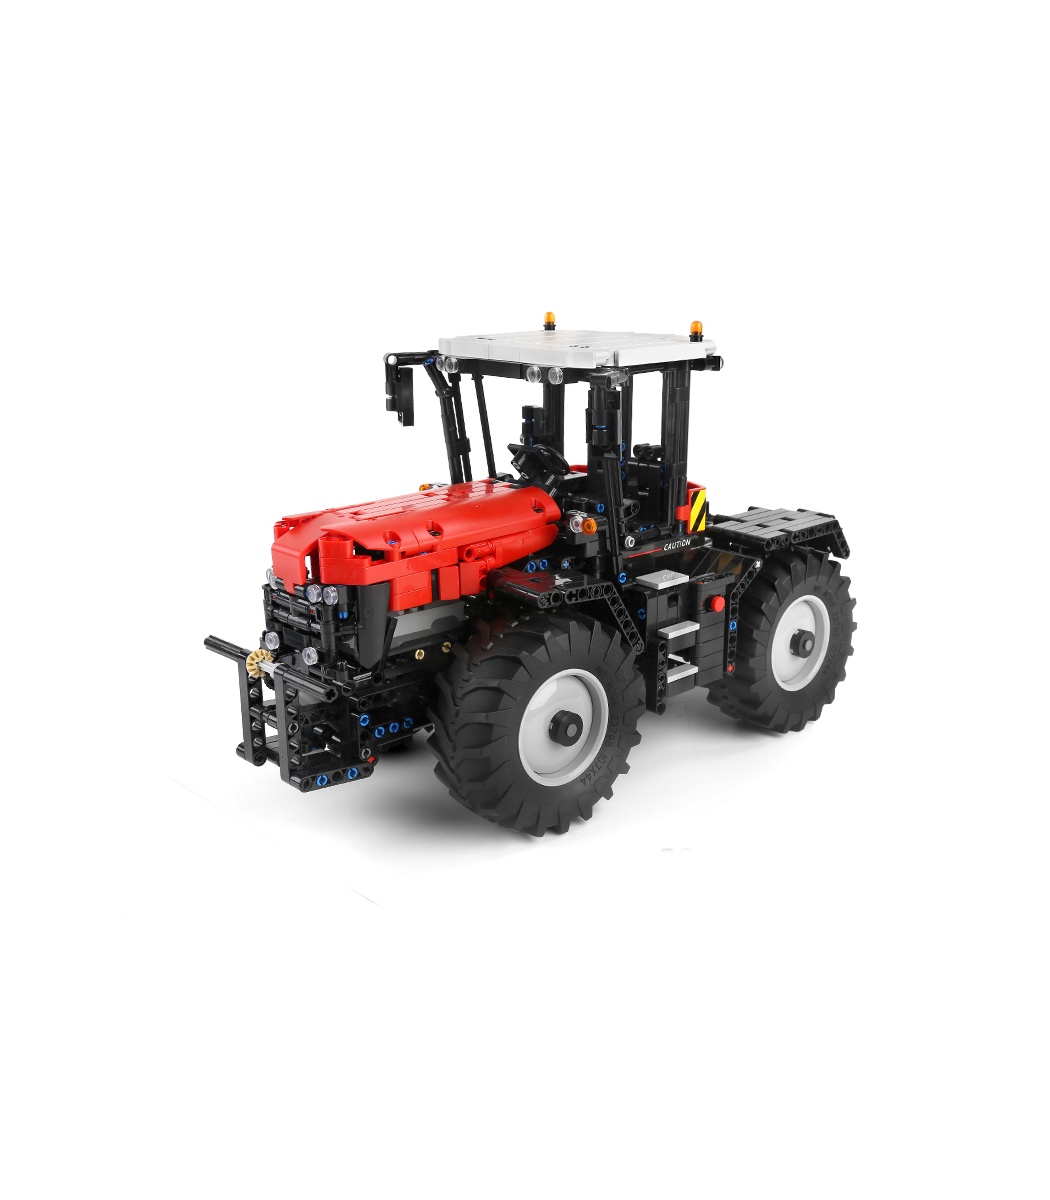 Acheter MOULD KING – tracteur agricole motorisé technique, modèle APP,  camion télécommandé, blocs de construction, briques, jouets pour enfants,  cadeau de noël